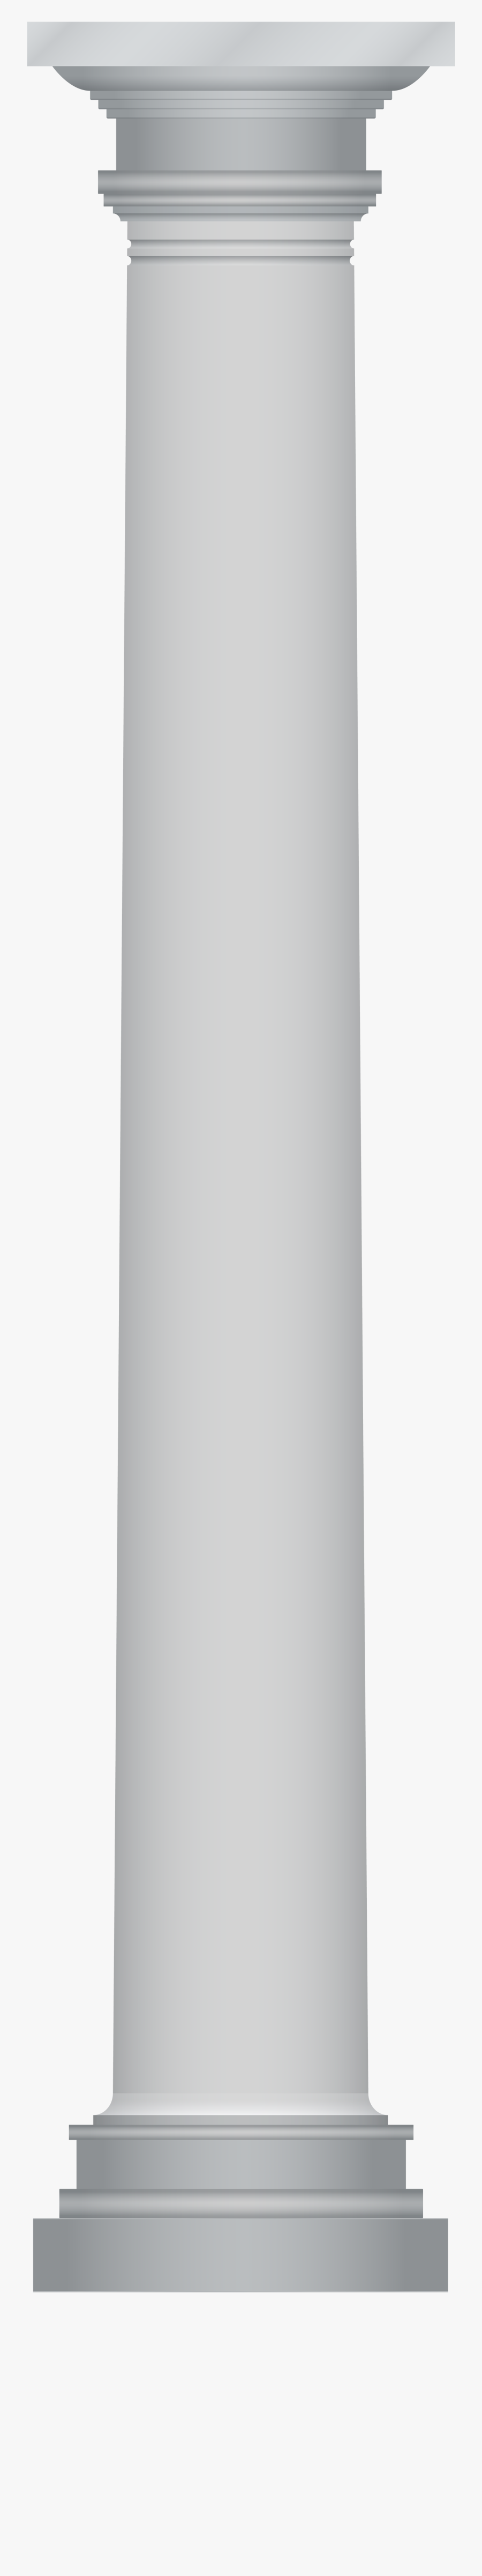 Column Clipart Transparent Background - Pillar Transparent, Transparent Clipart